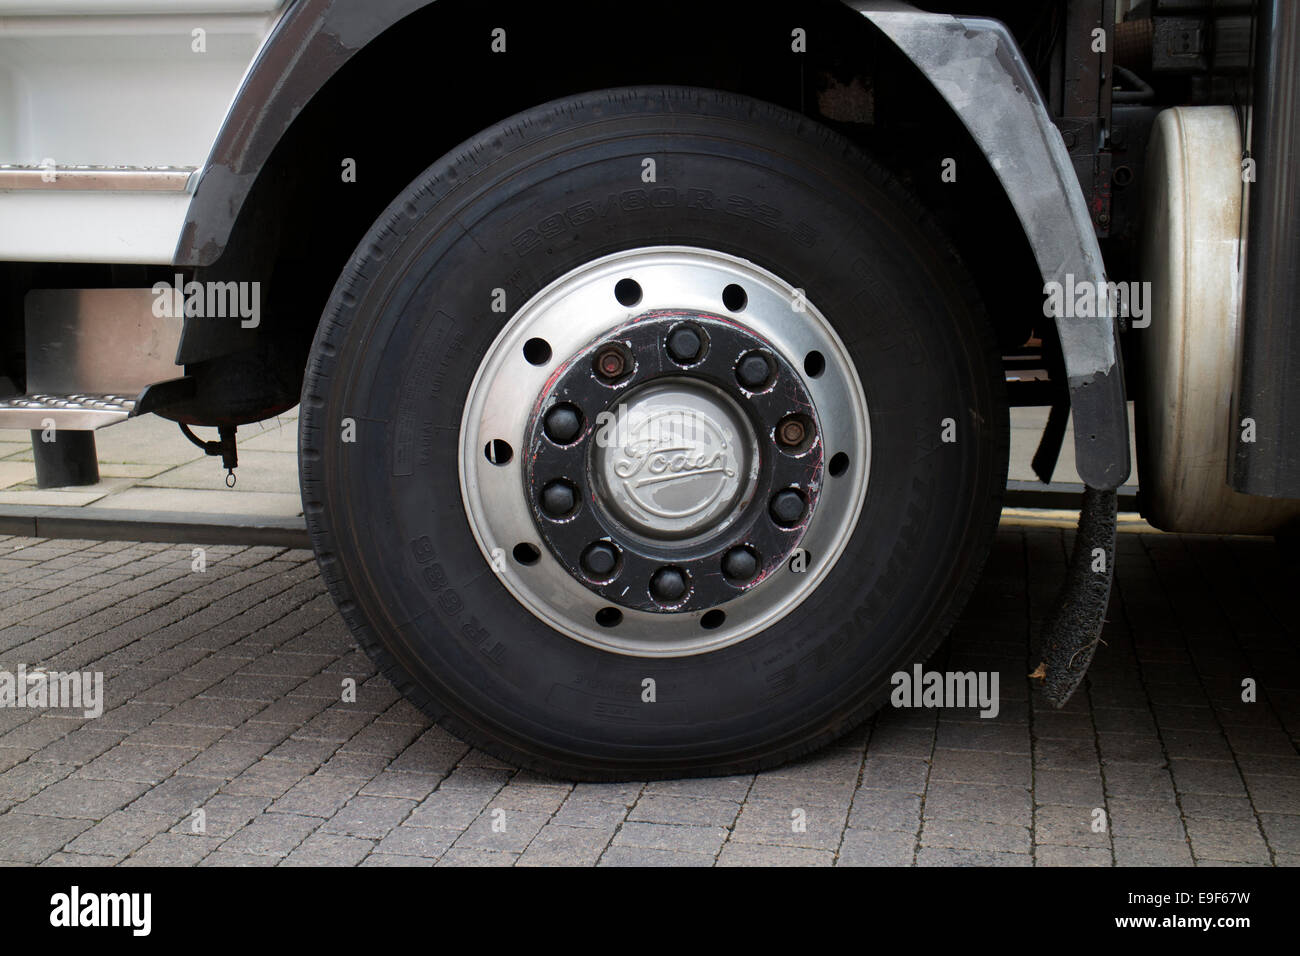 Foden lorry wheel Stock Photo